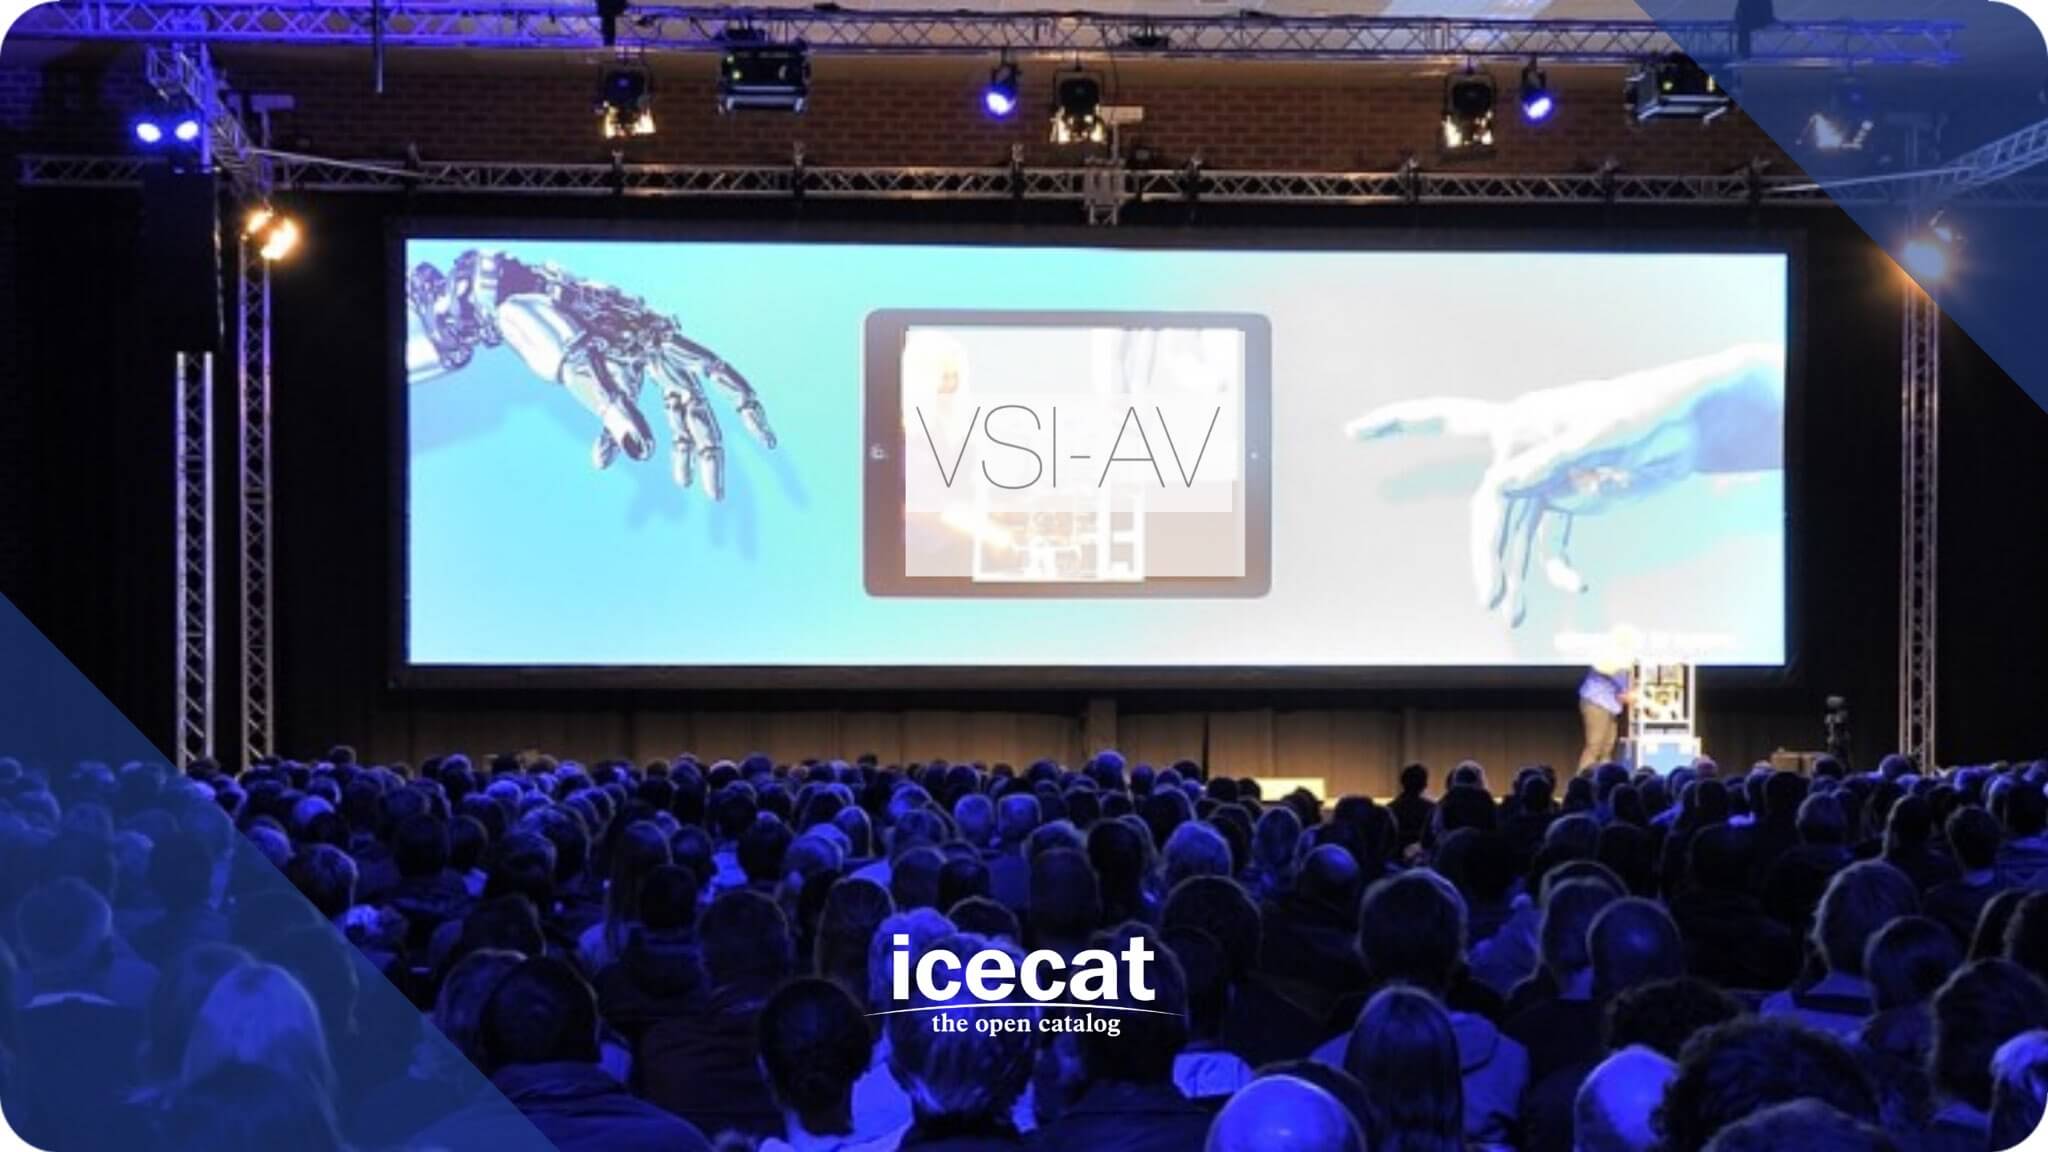 VSI-AV-start-with-Icecat